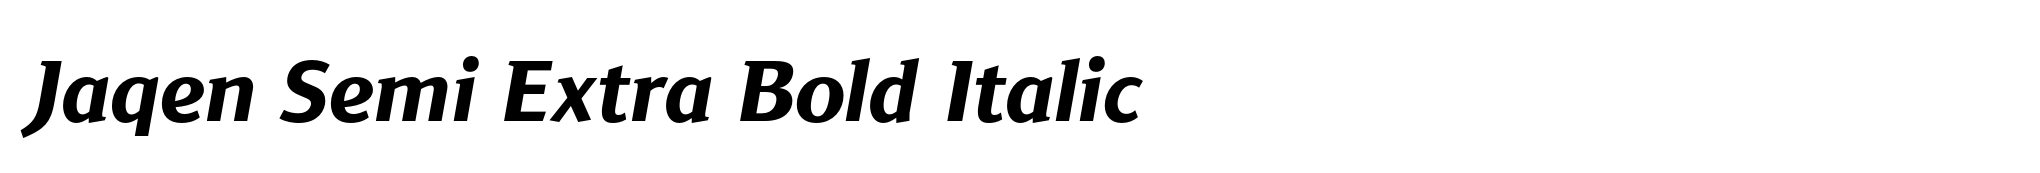 Jaqen Semi Extra Bold Italic image